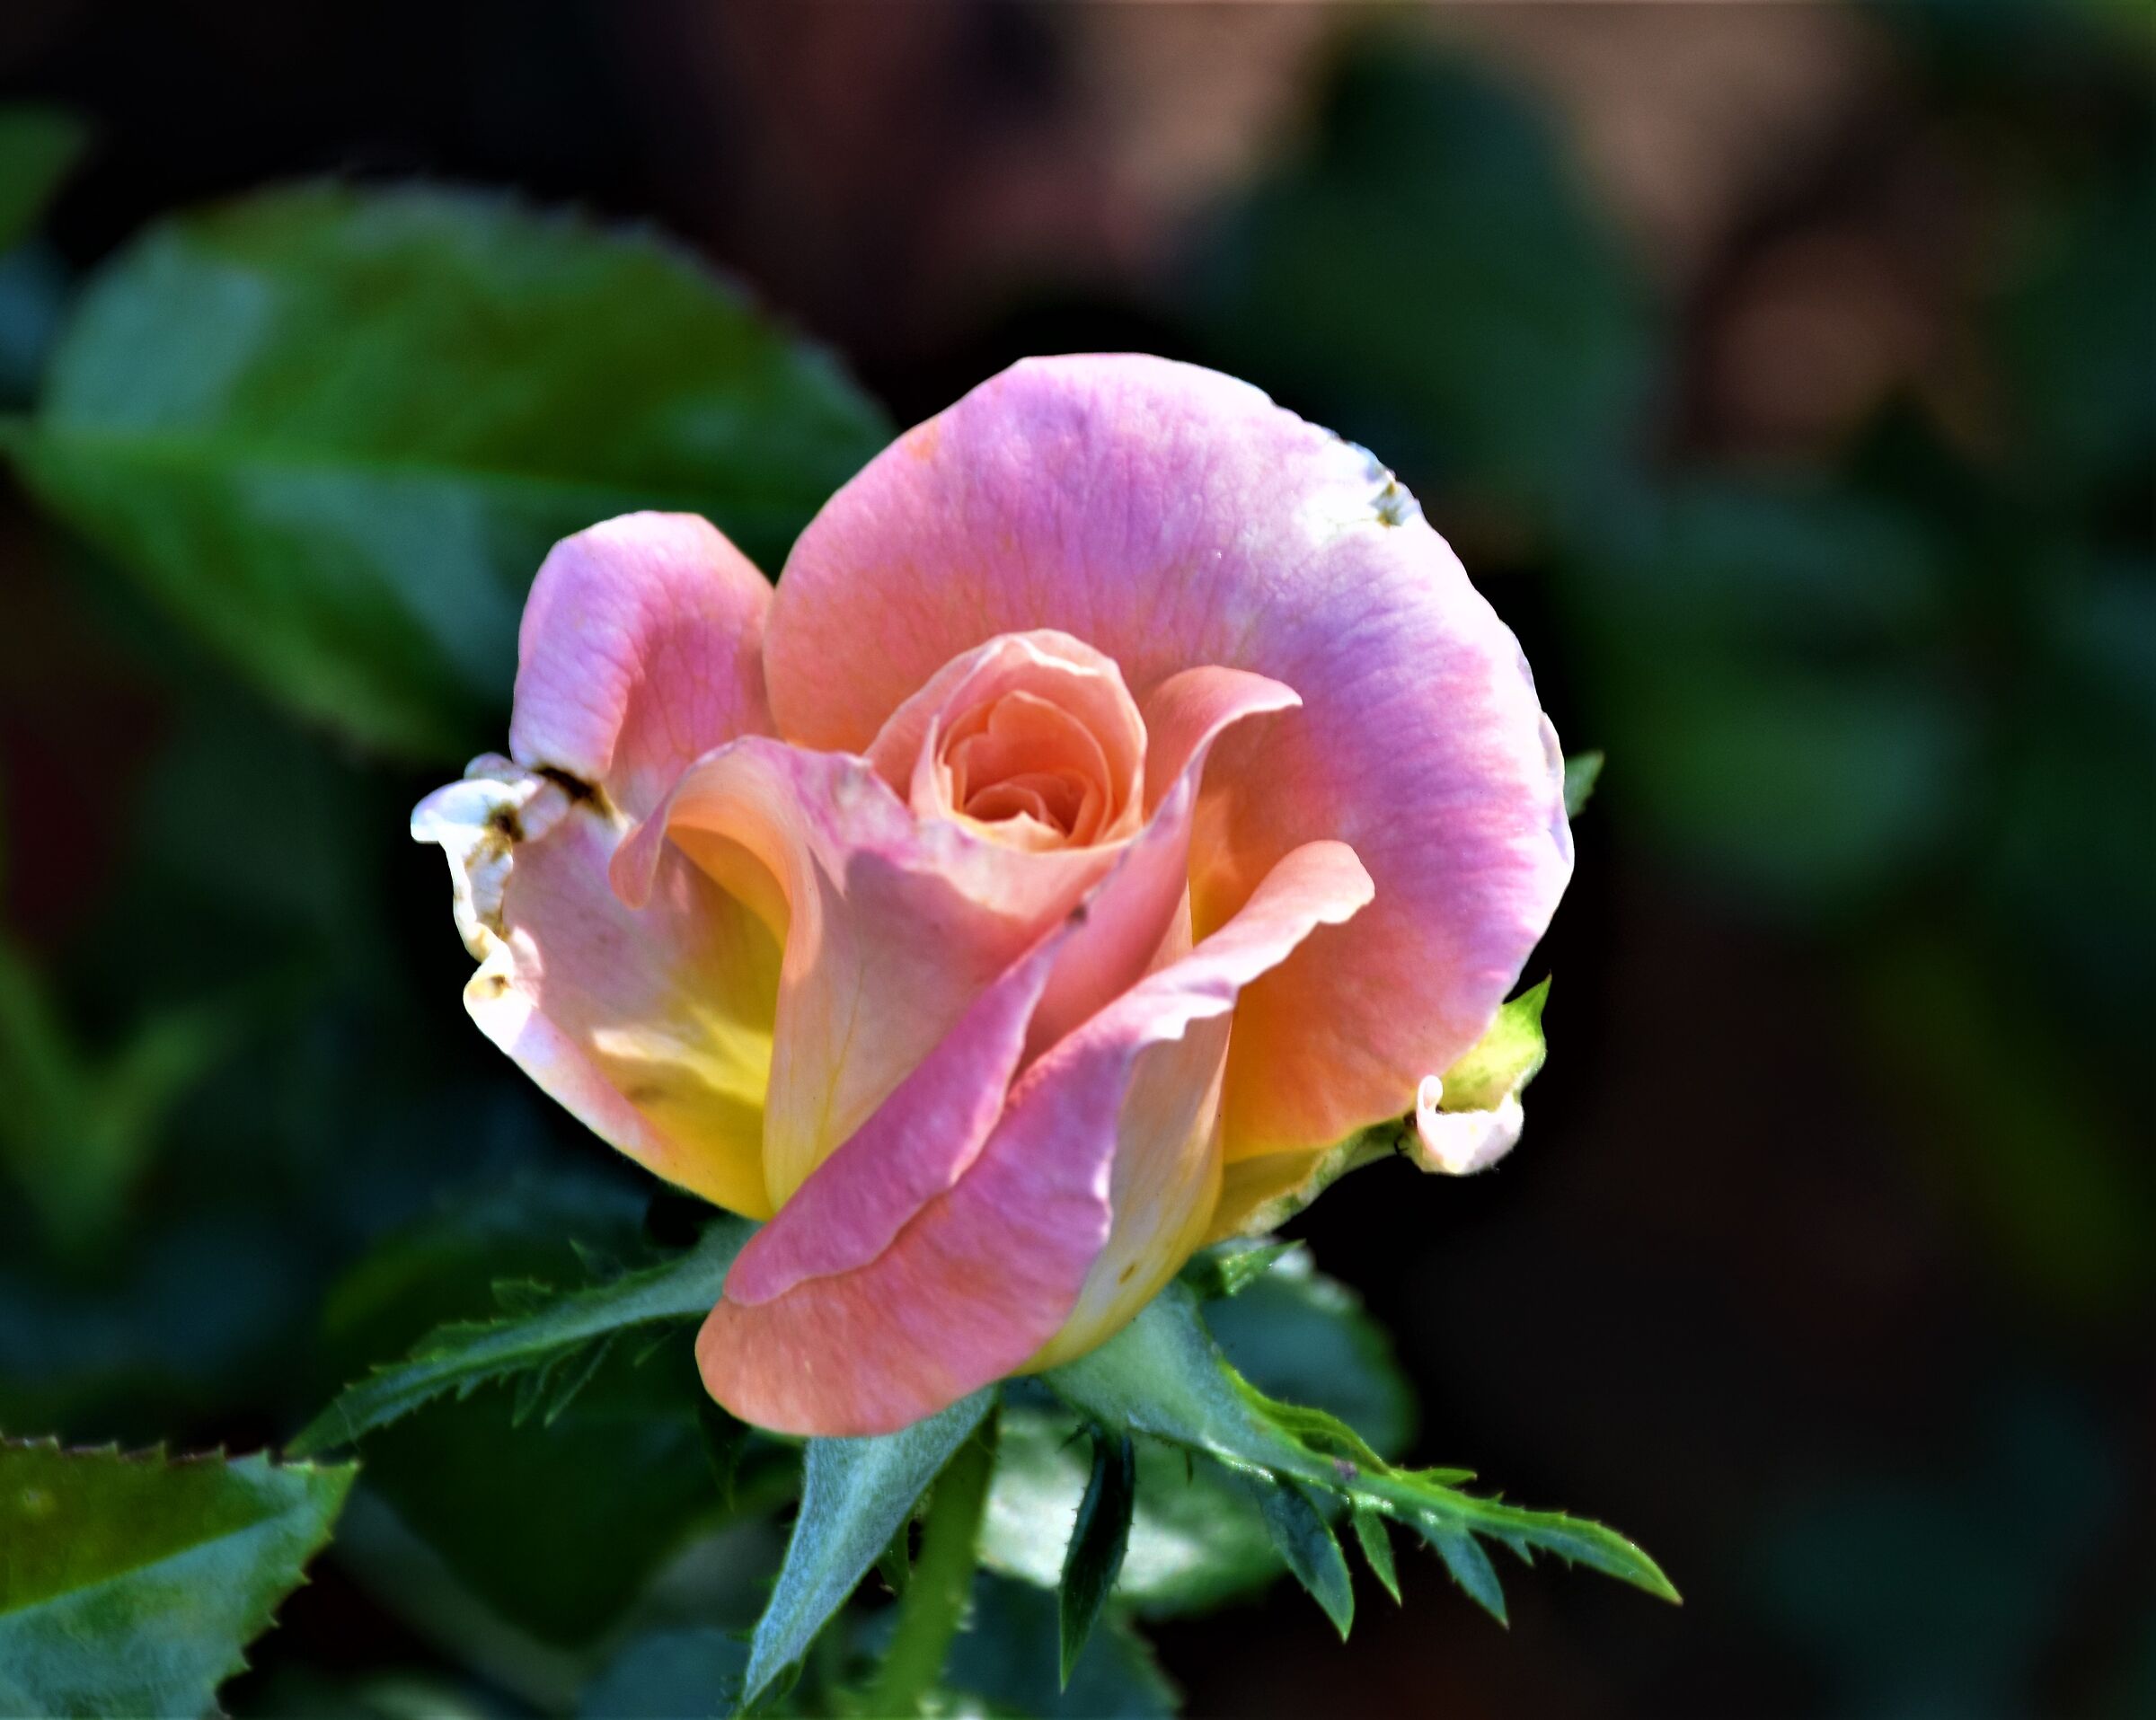 Ancient rose in Fiorissima Ovada (AL)...